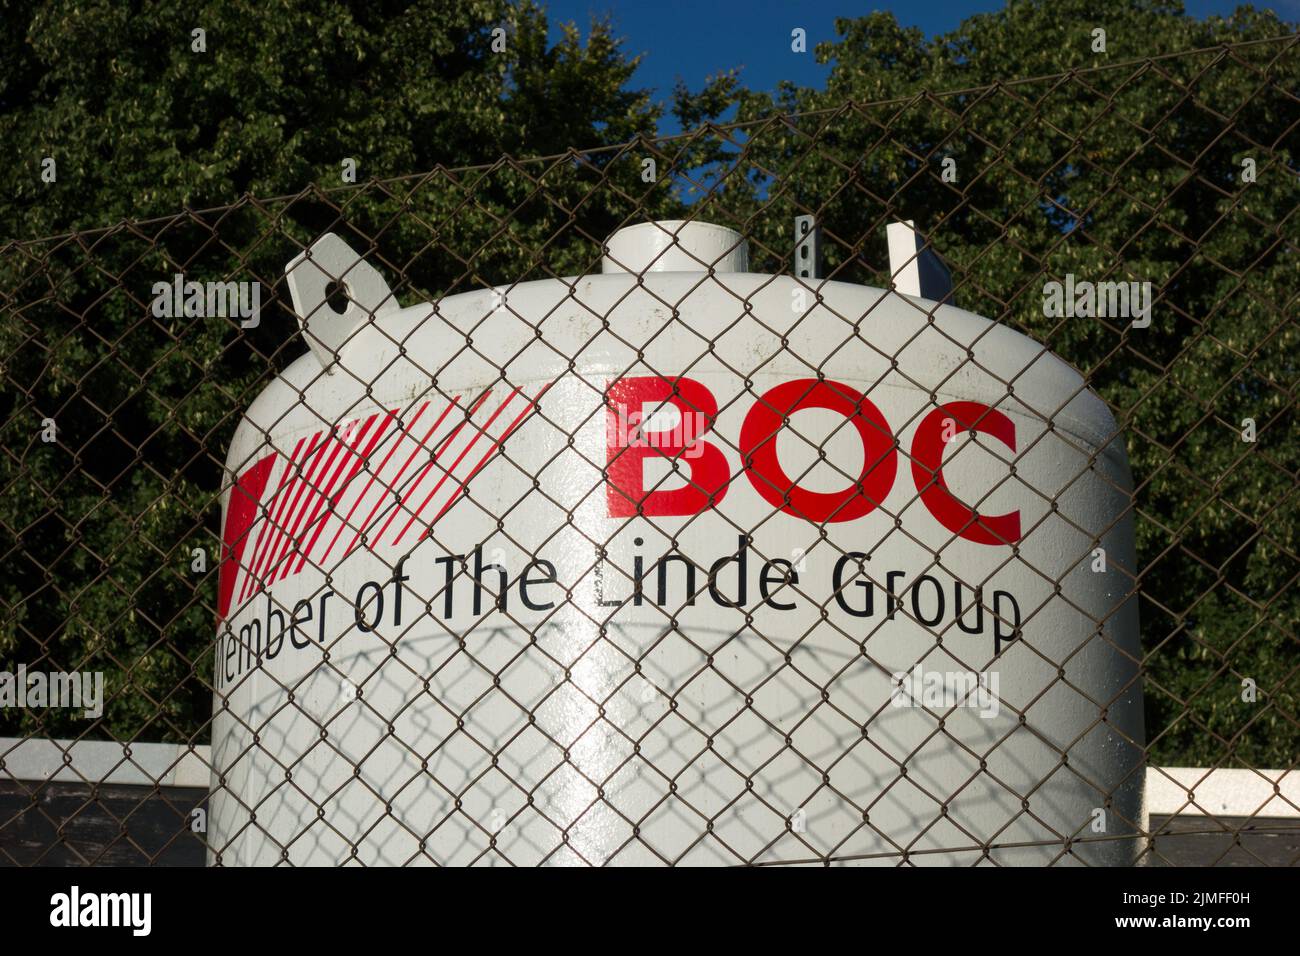 Un gran tanque de oxígeno líquido BOC en los terrenos de un hospital Foto de stock